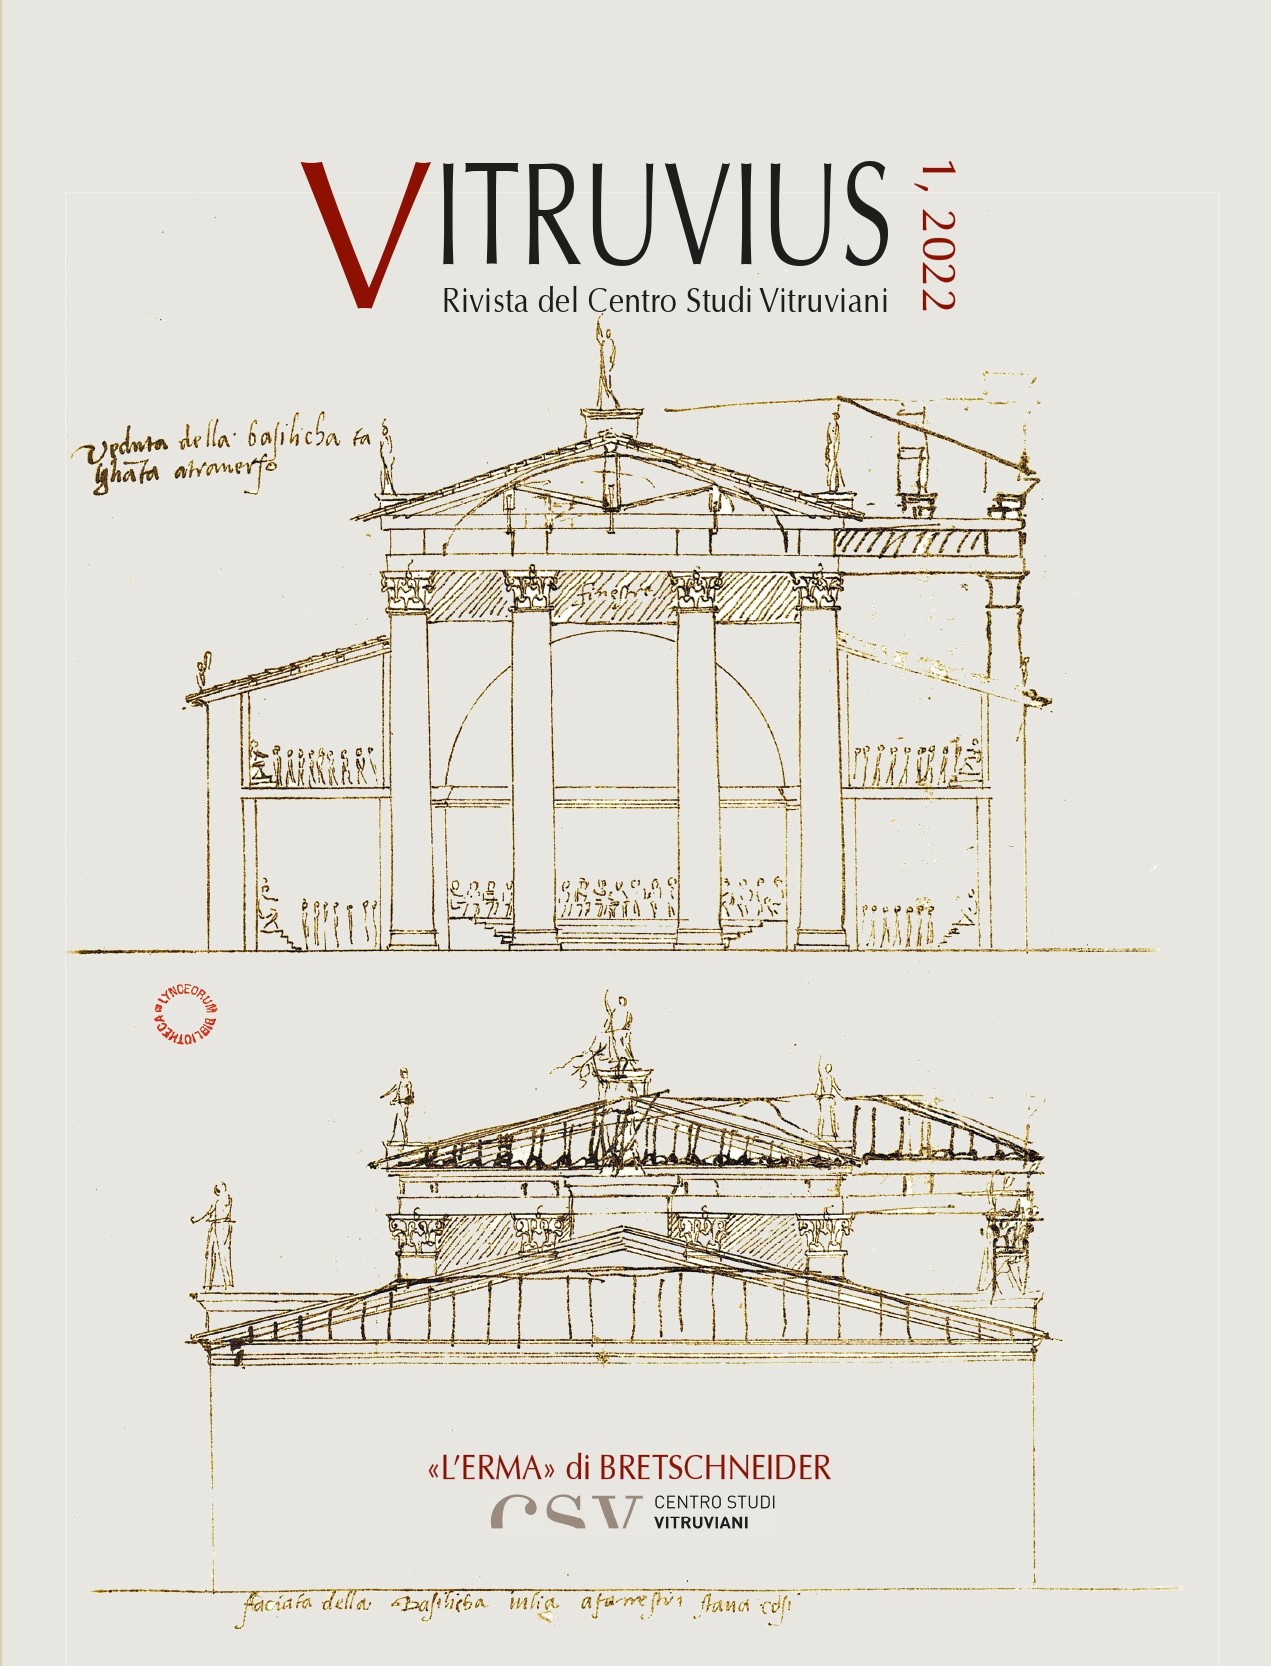 VITRUVIUS, rivista del Centro Studi Vitruviani